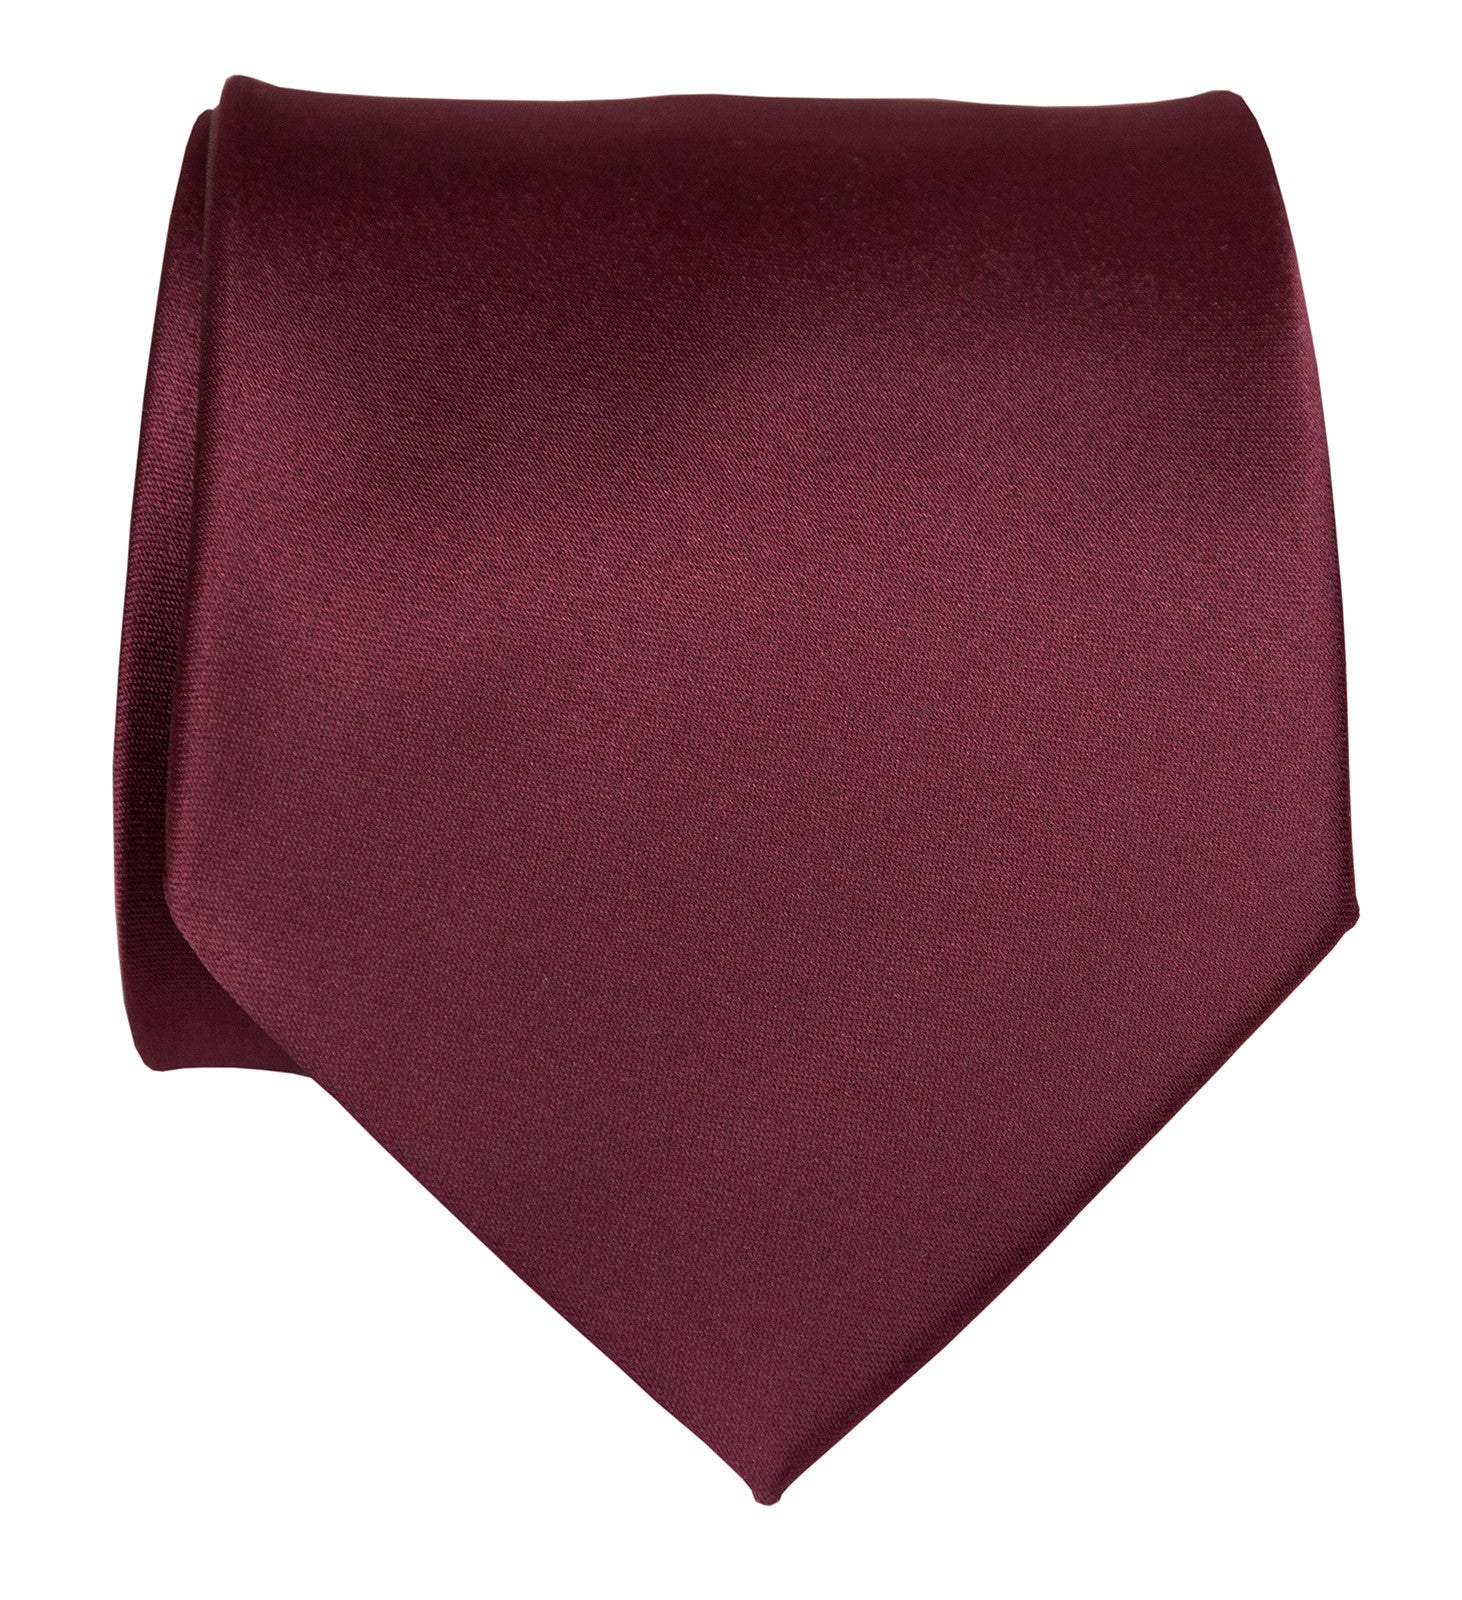 Maroon Necktie. Solid Color Dark Satin No Print